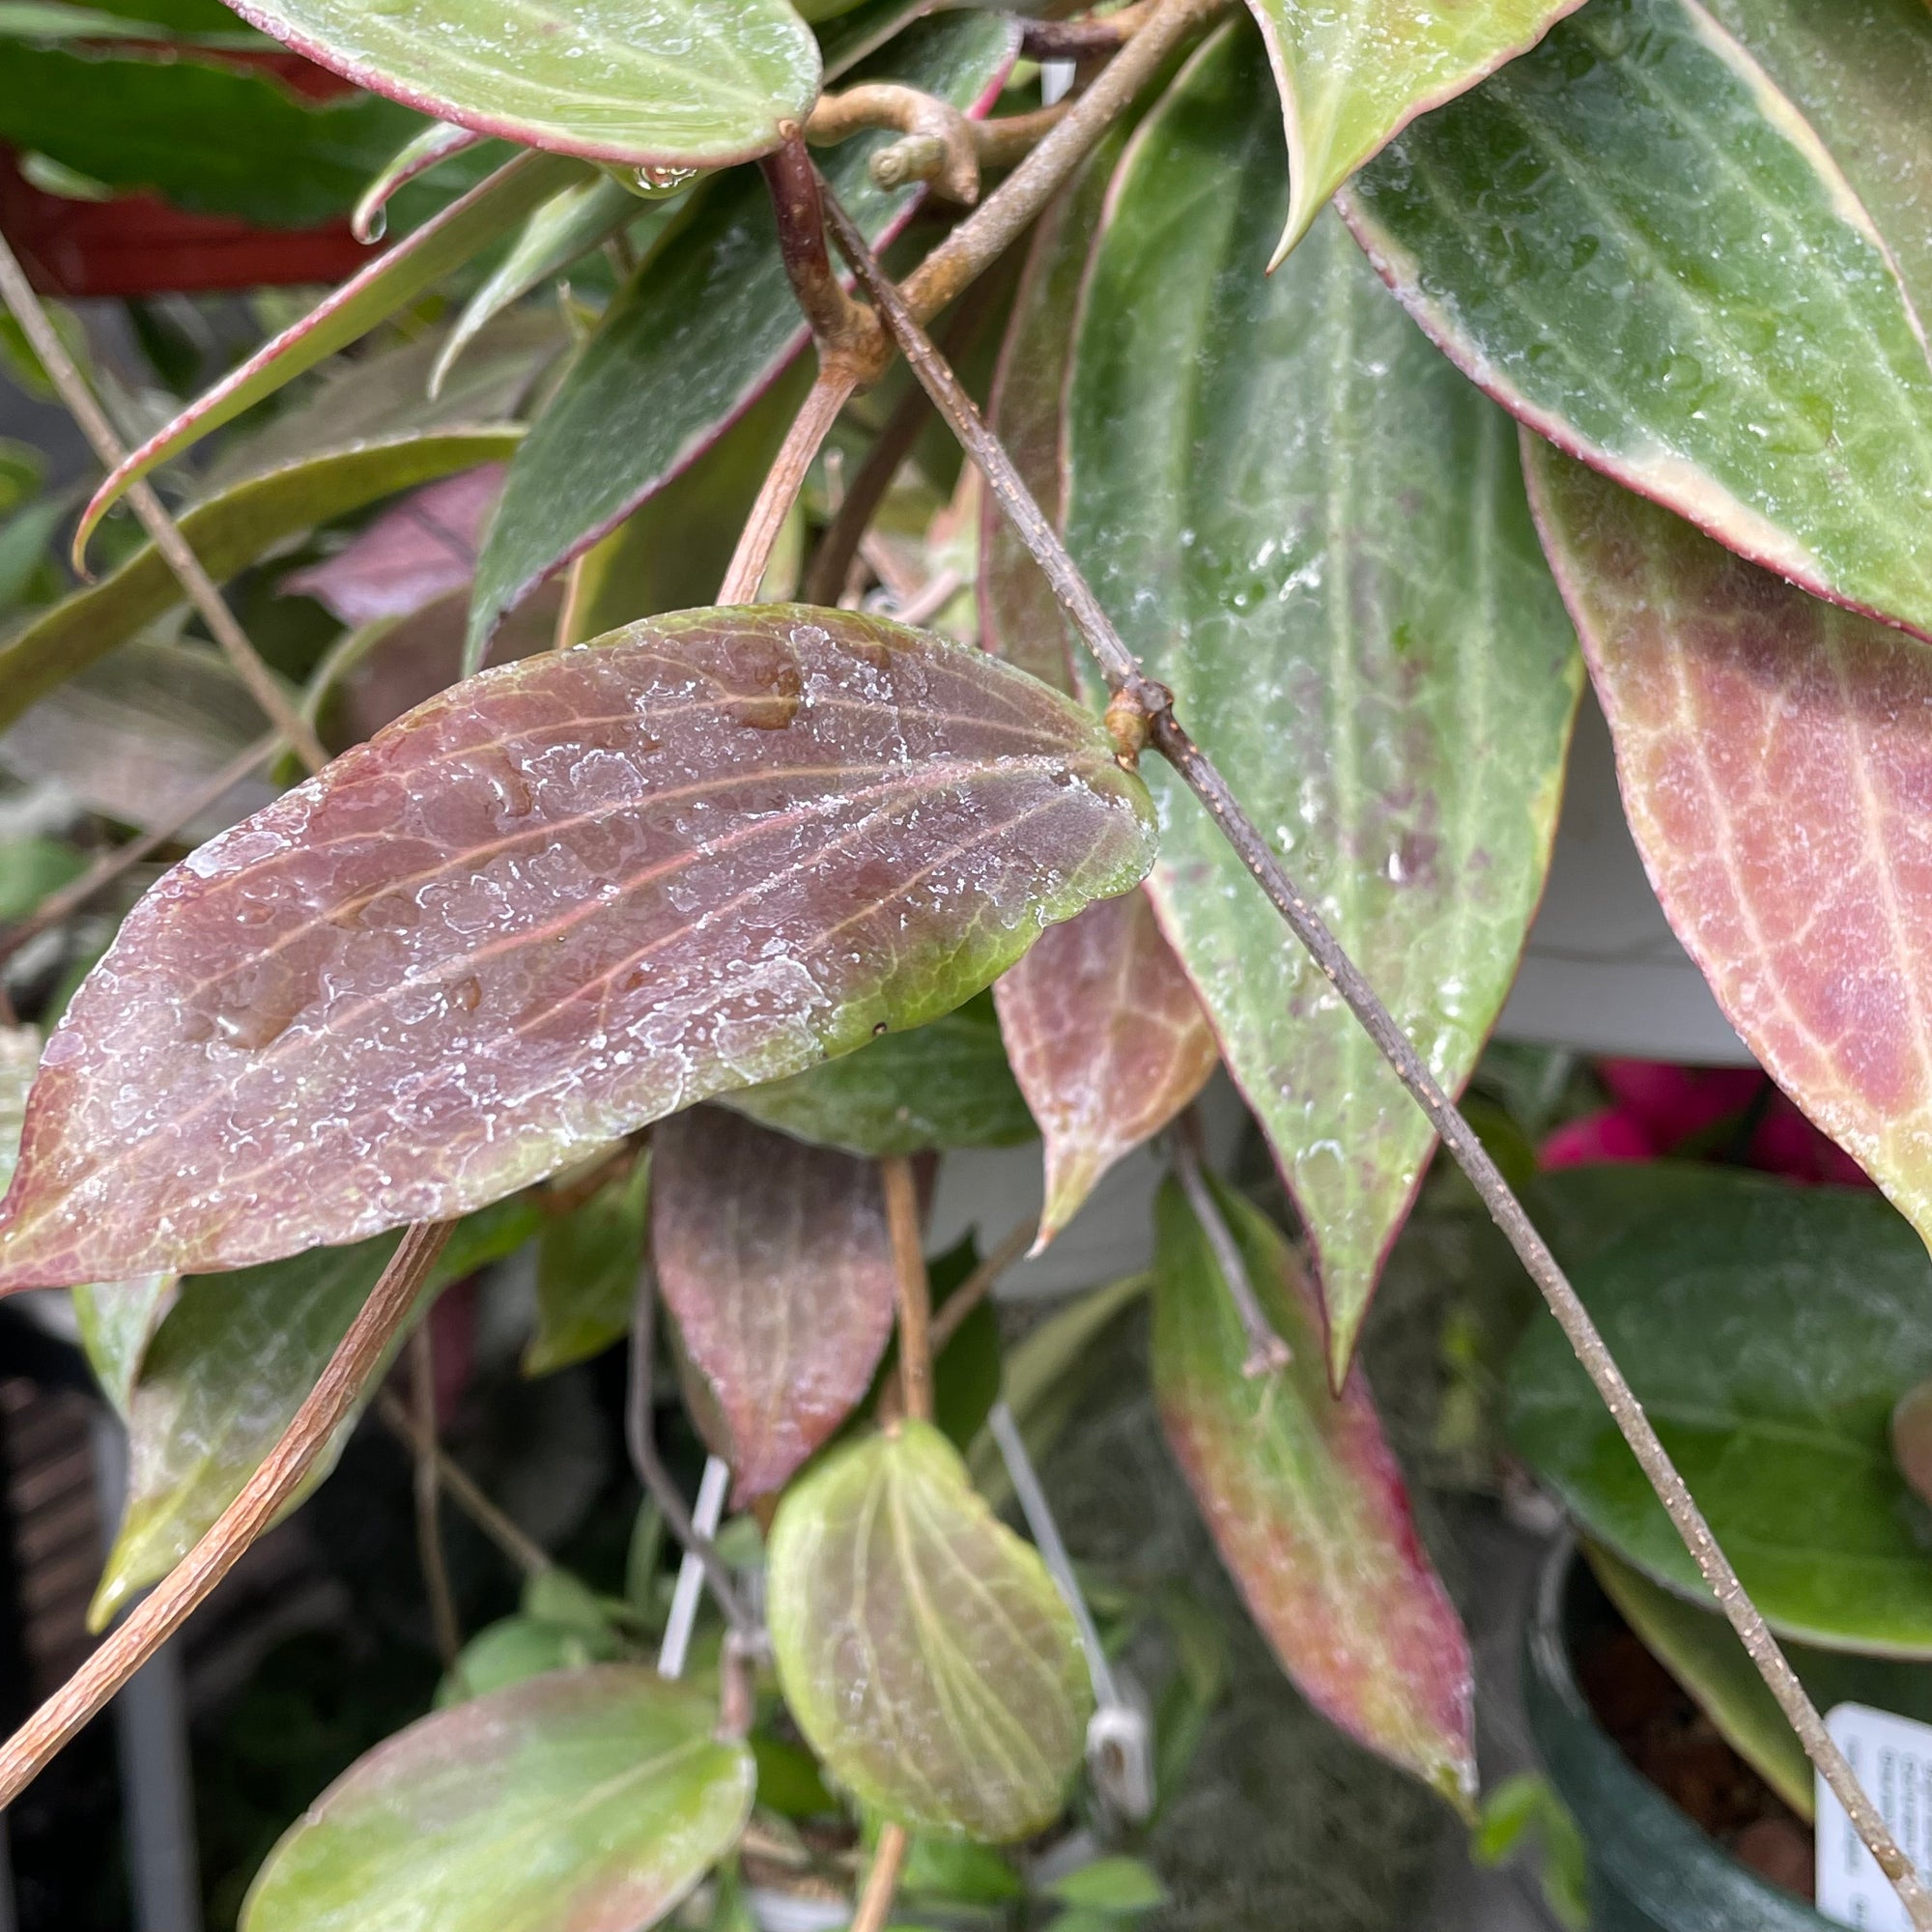 Hoya benguetensis